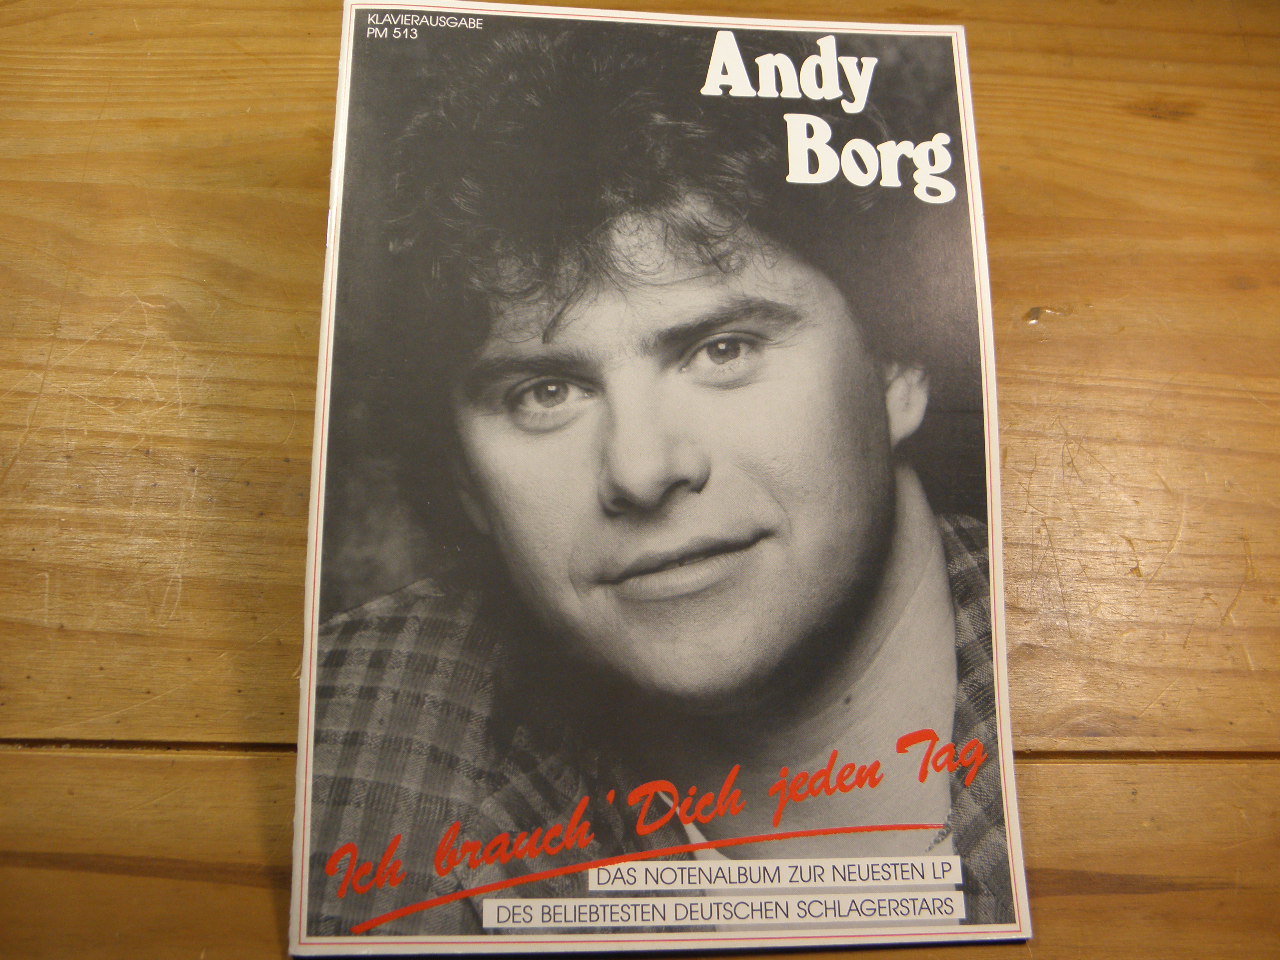 SONGBOOKS.-  BORG, Andy: - Ich brauch' Dich jeden Tag. Das Notenalbum zur neuesten LP des beliebtesten deutschen Schlagerstars.